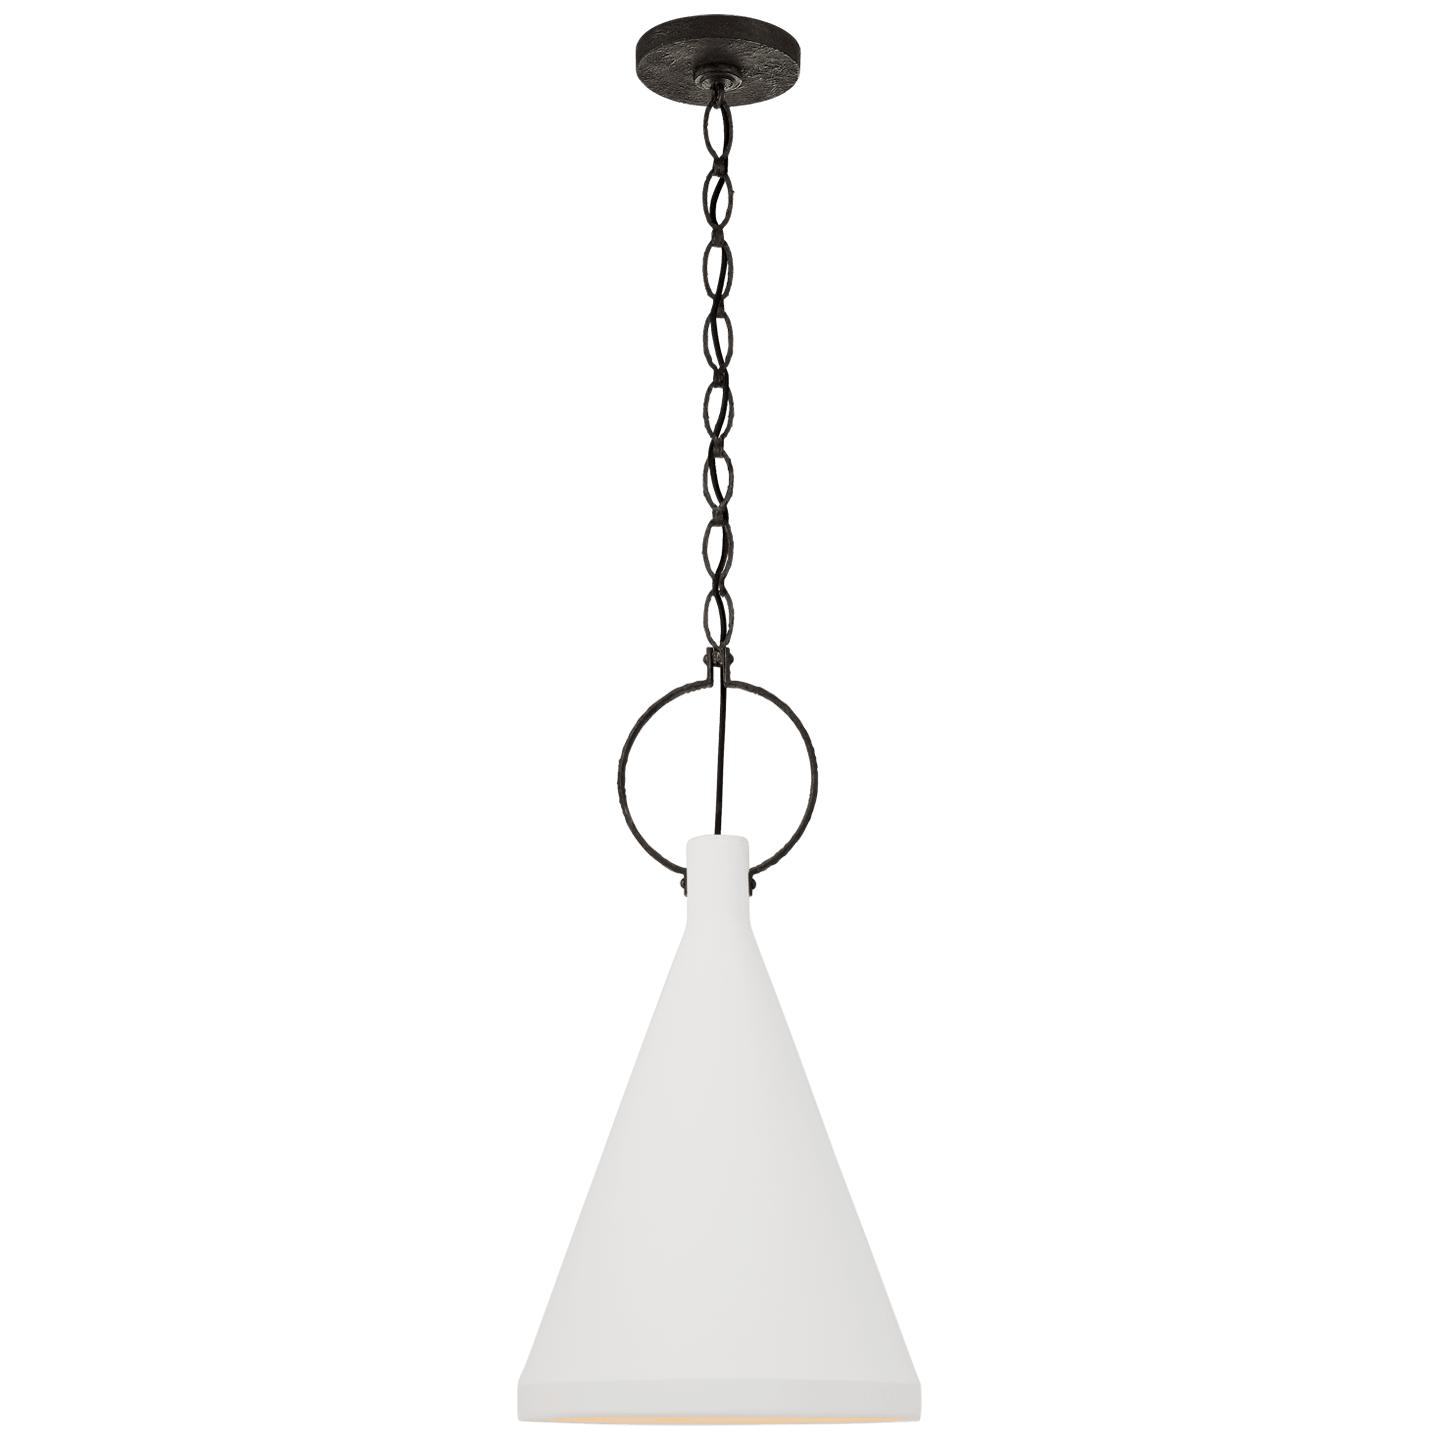 Купить Подвесной светильник Limoges Medium Tall Pendant в интернет-магазине roooms.ru